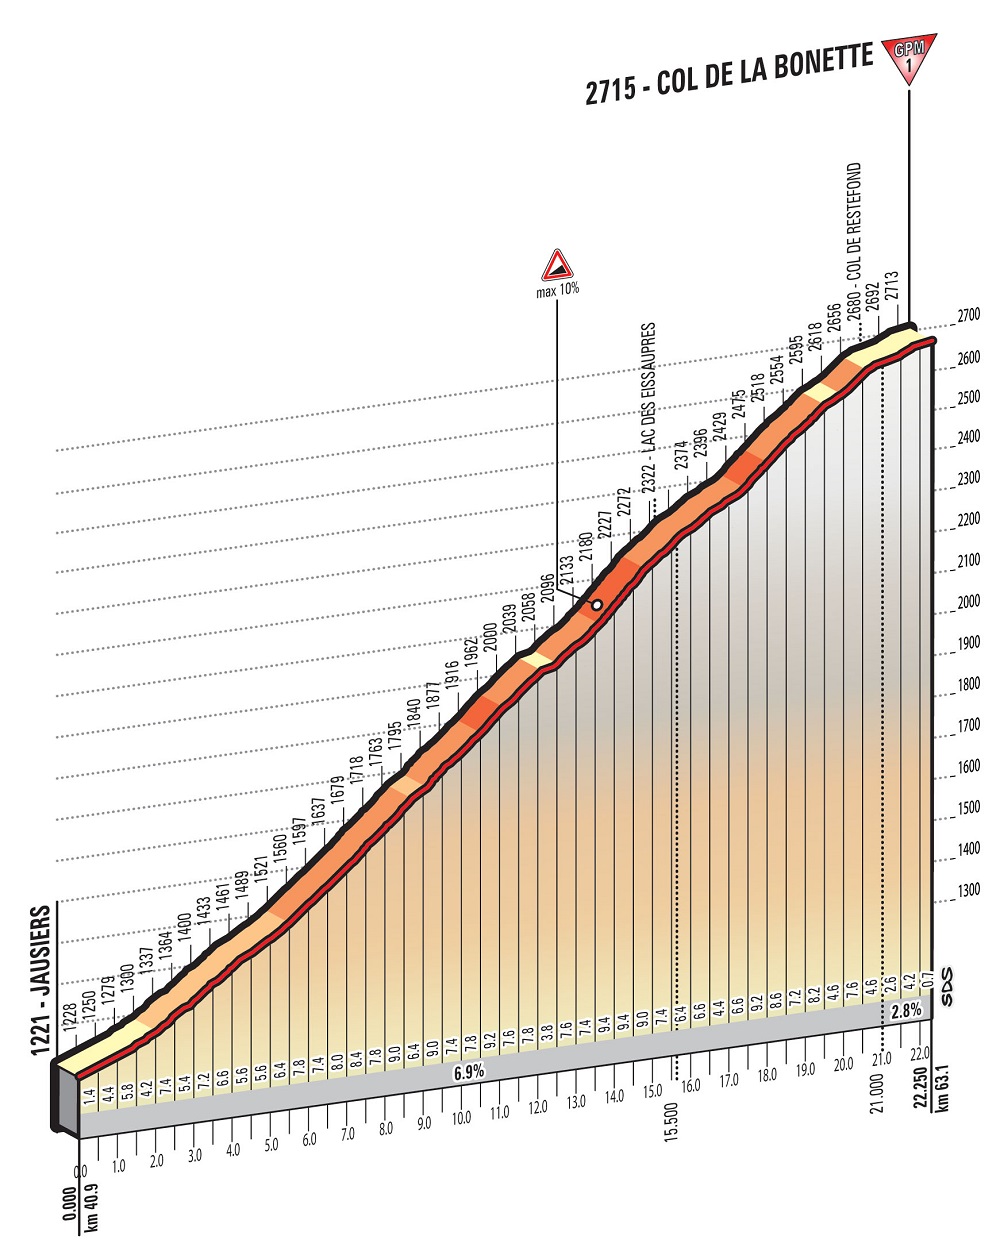 Hhenprofil Giro dItalia 2016 - Etappe 20, Col de la Bonette